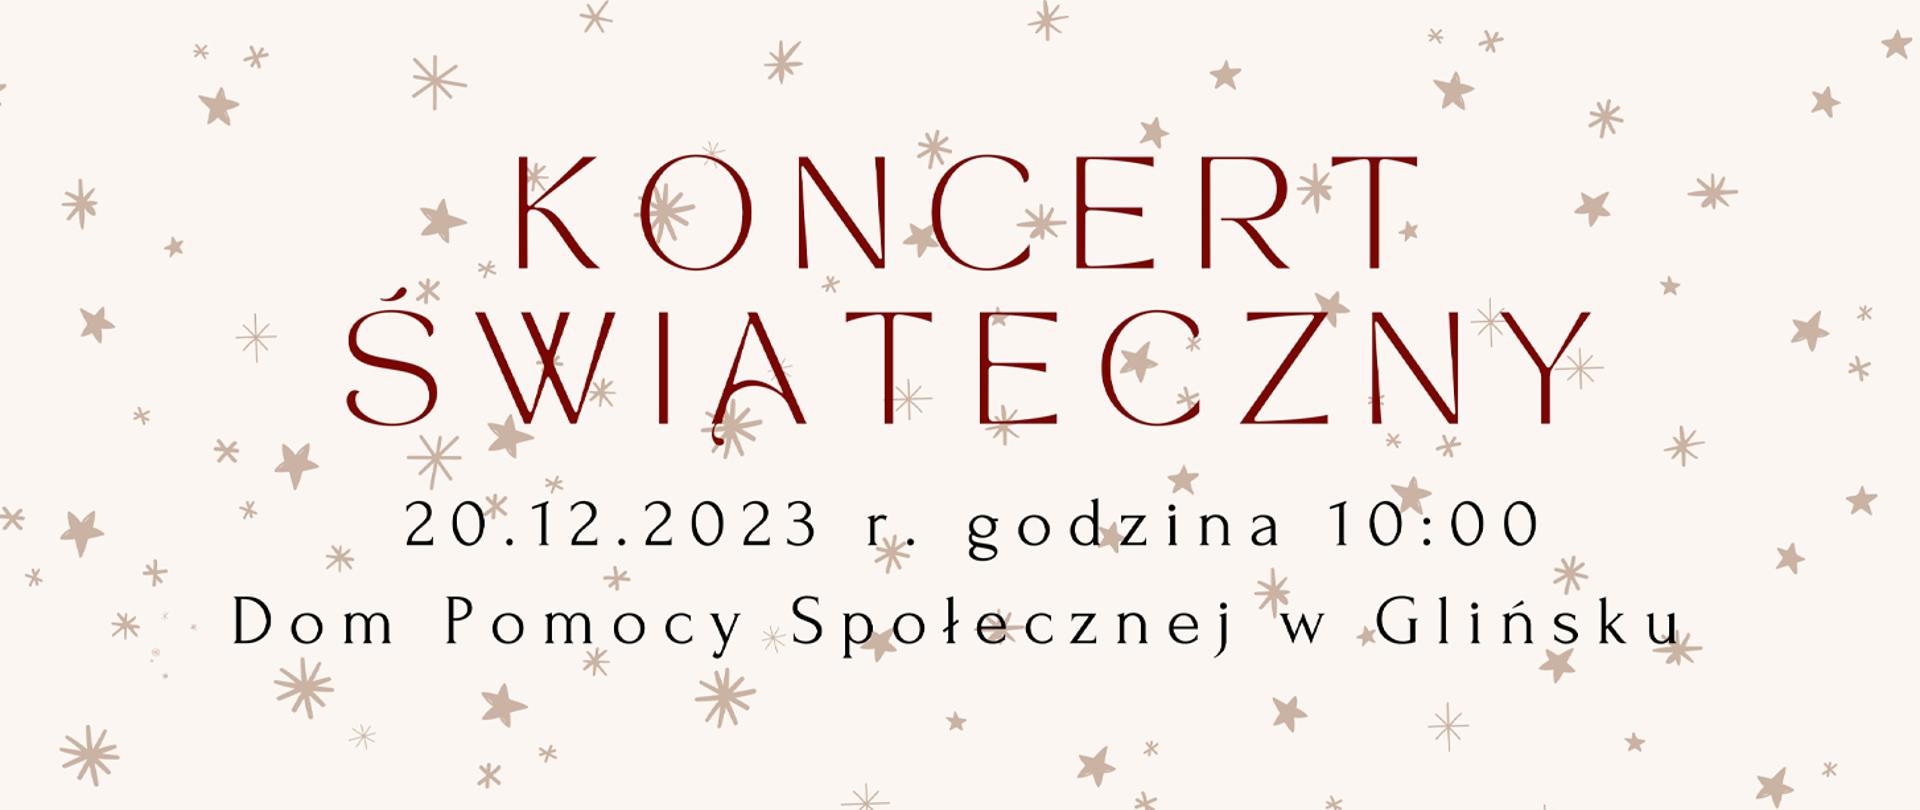 Baner zapowiadający występ w Glińsku, na beżowym tle pis koncert świąteczny oraz data i miejsce wydarzenia.